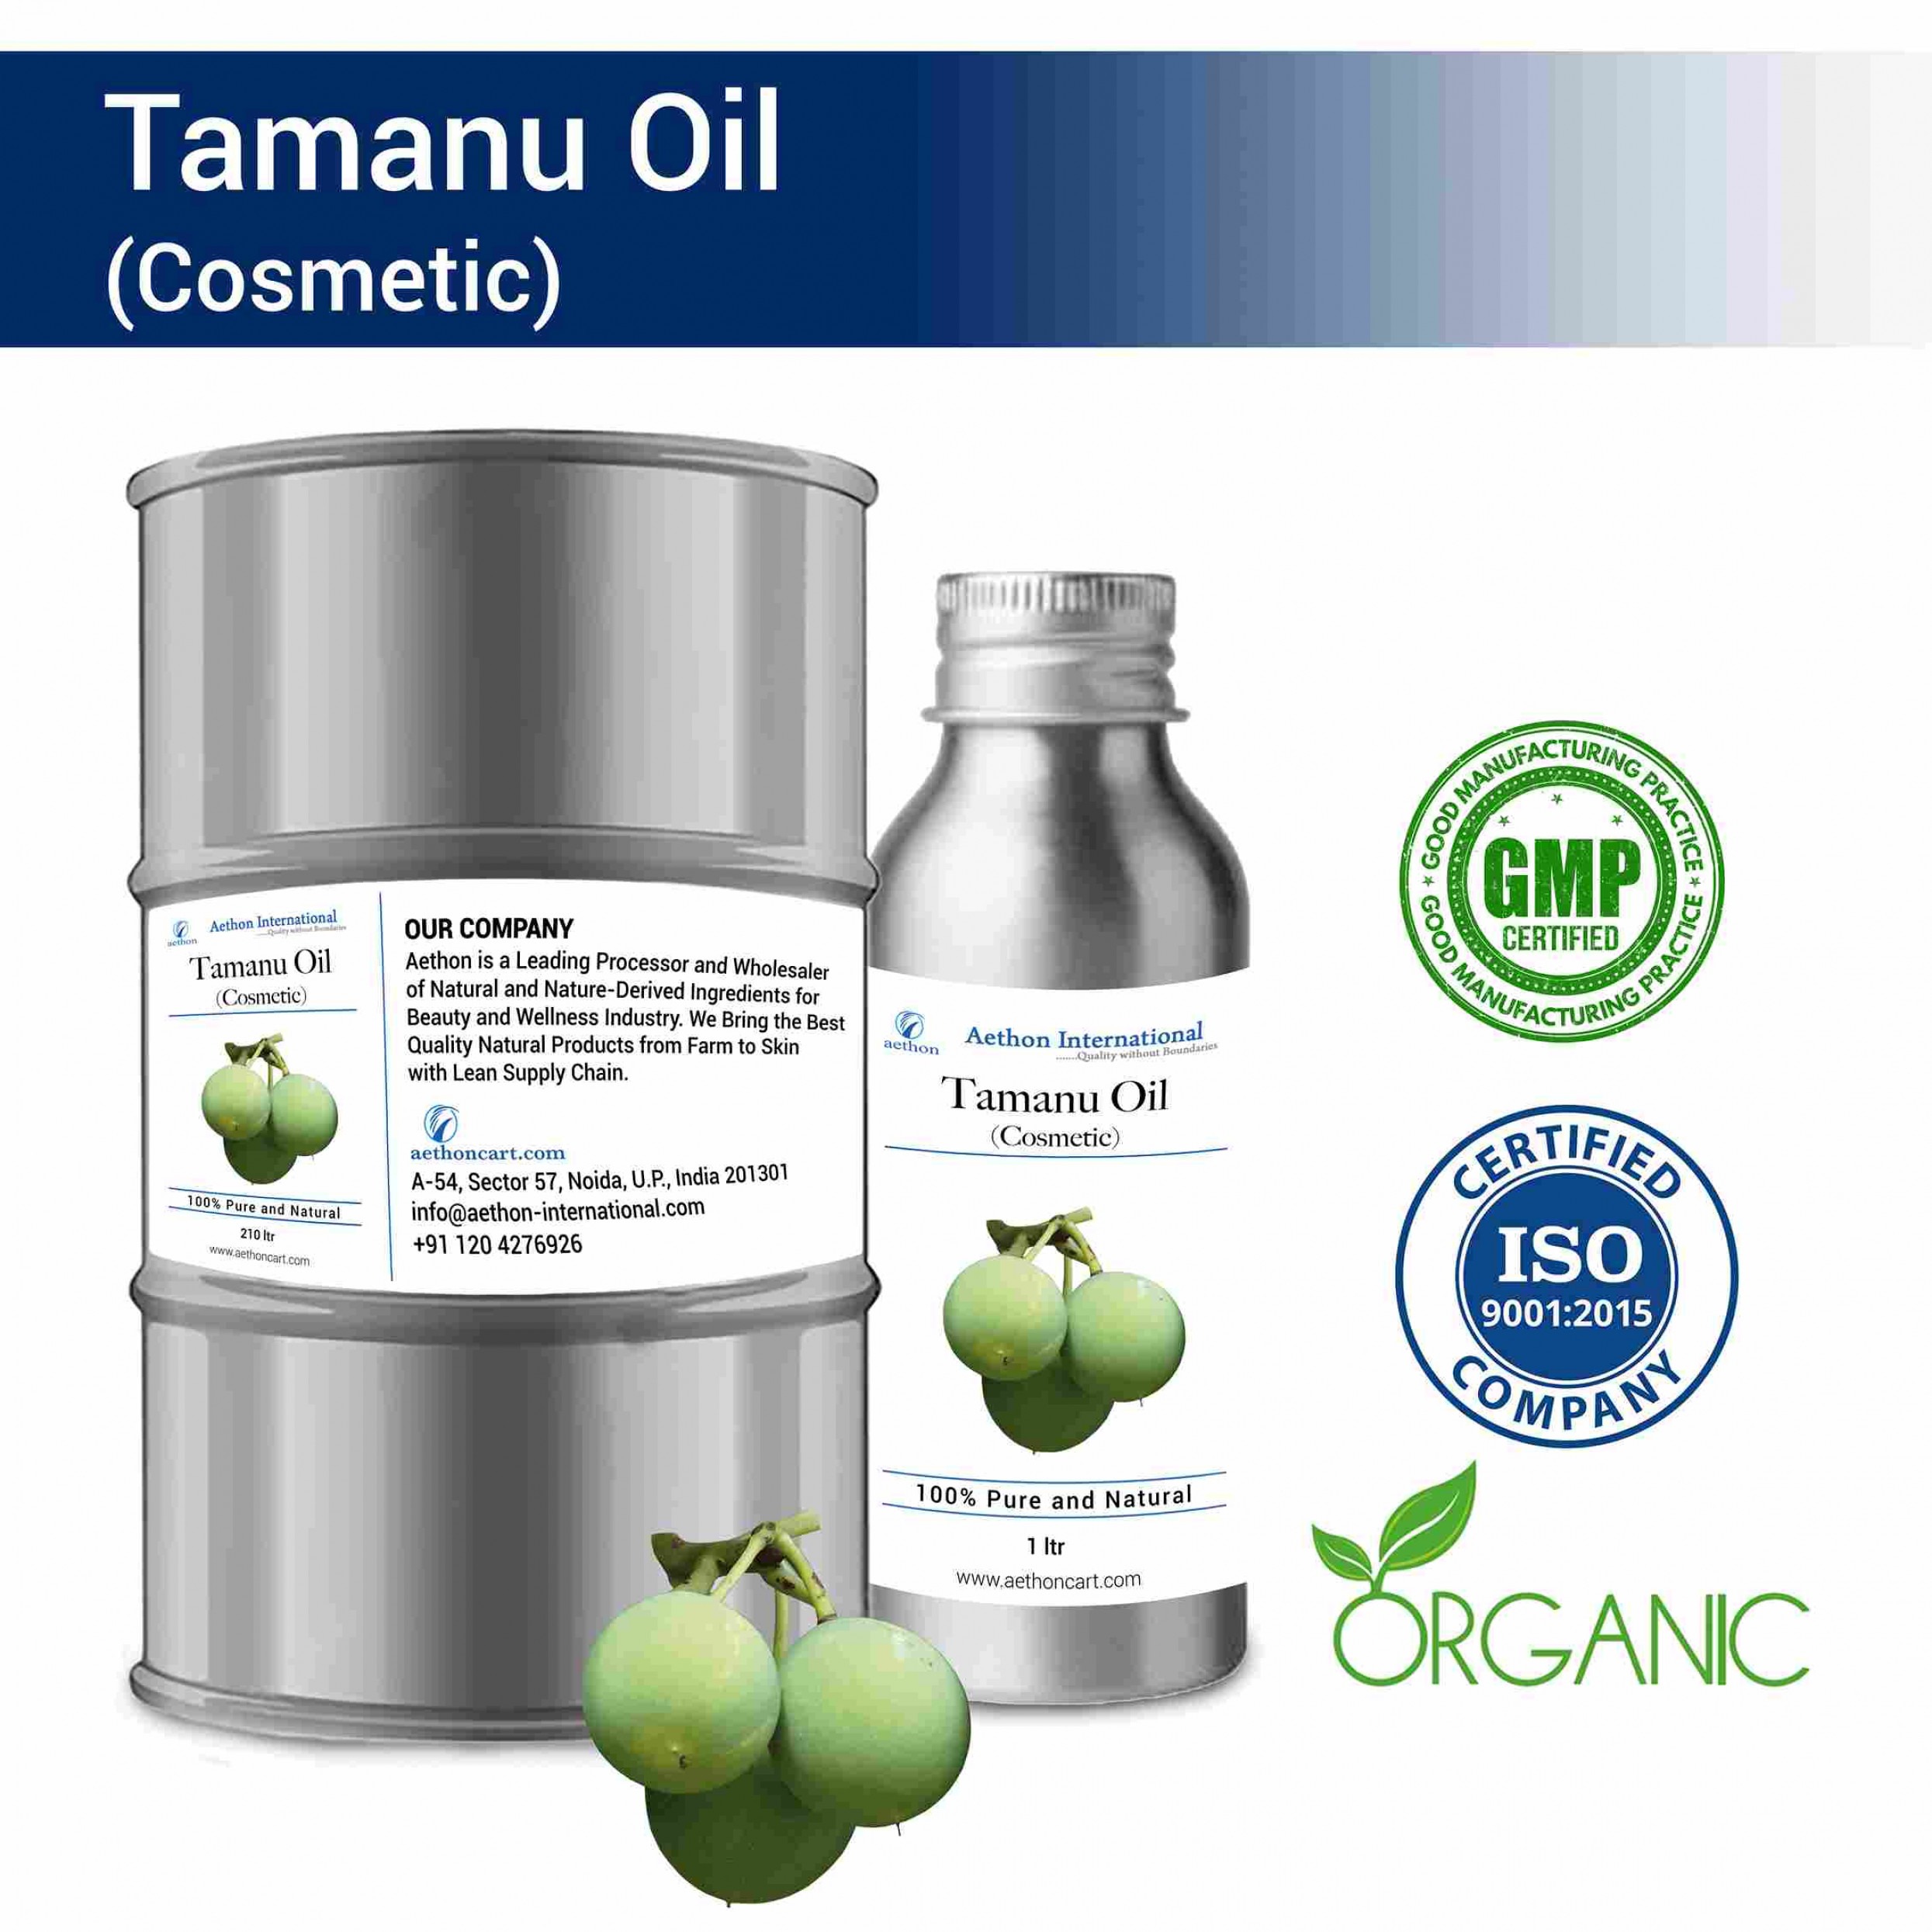 Tamanu Oil (Cosmetic)